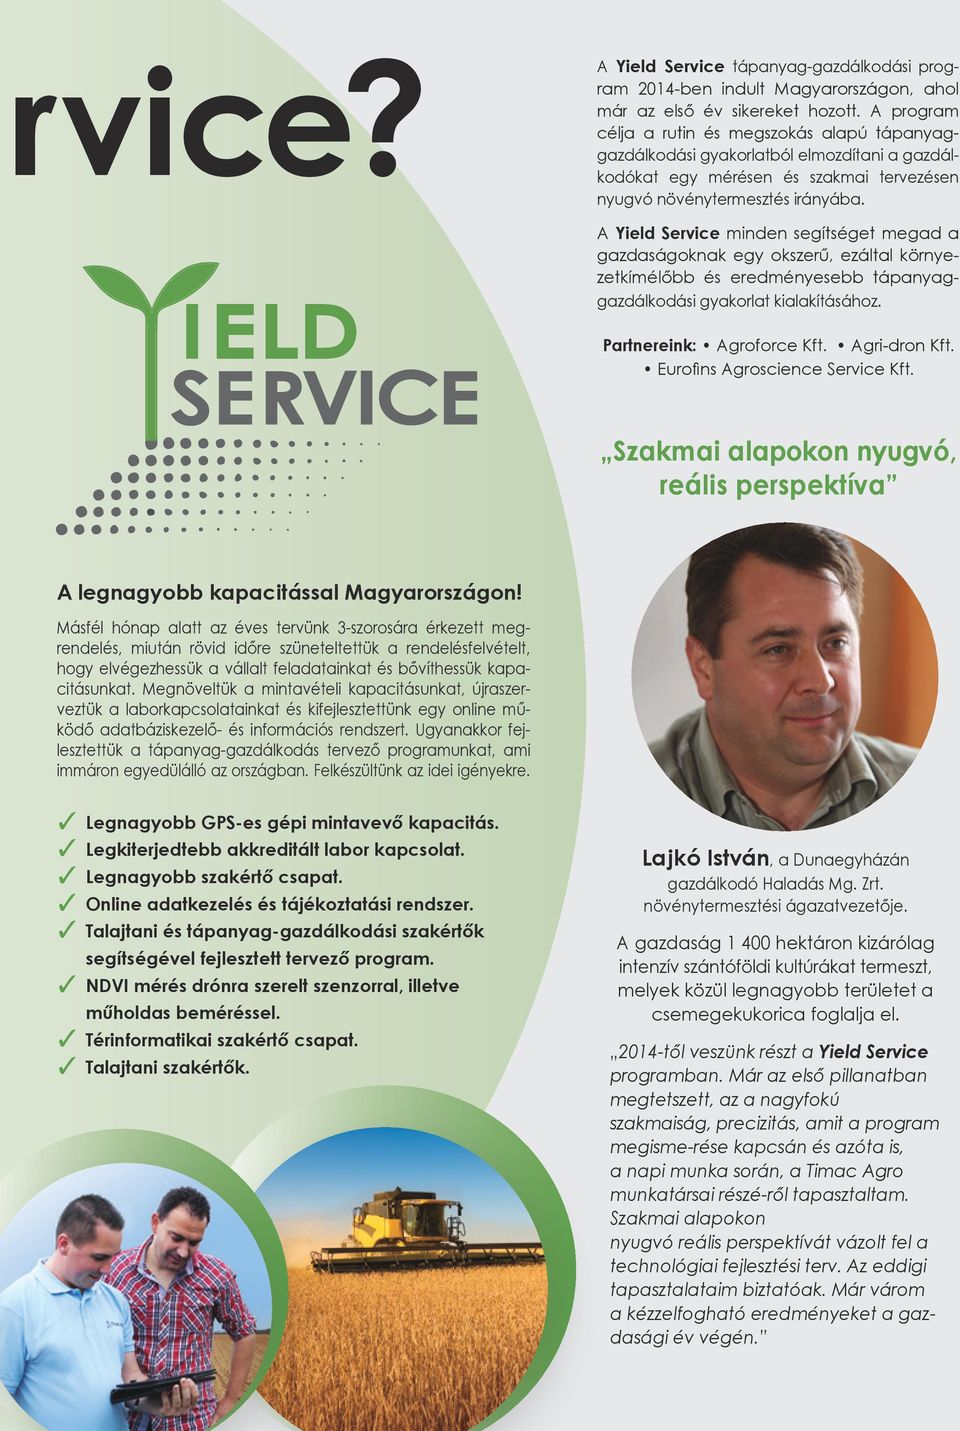 A Yield Service minden segítséget megad a gazdaságoknak egy okszerű, ezáltal környezetkímélőbb és eredményesebb tápanyaggazdálkodási gyakorlat kialakításához. Partnereink: Agroforce Kft.